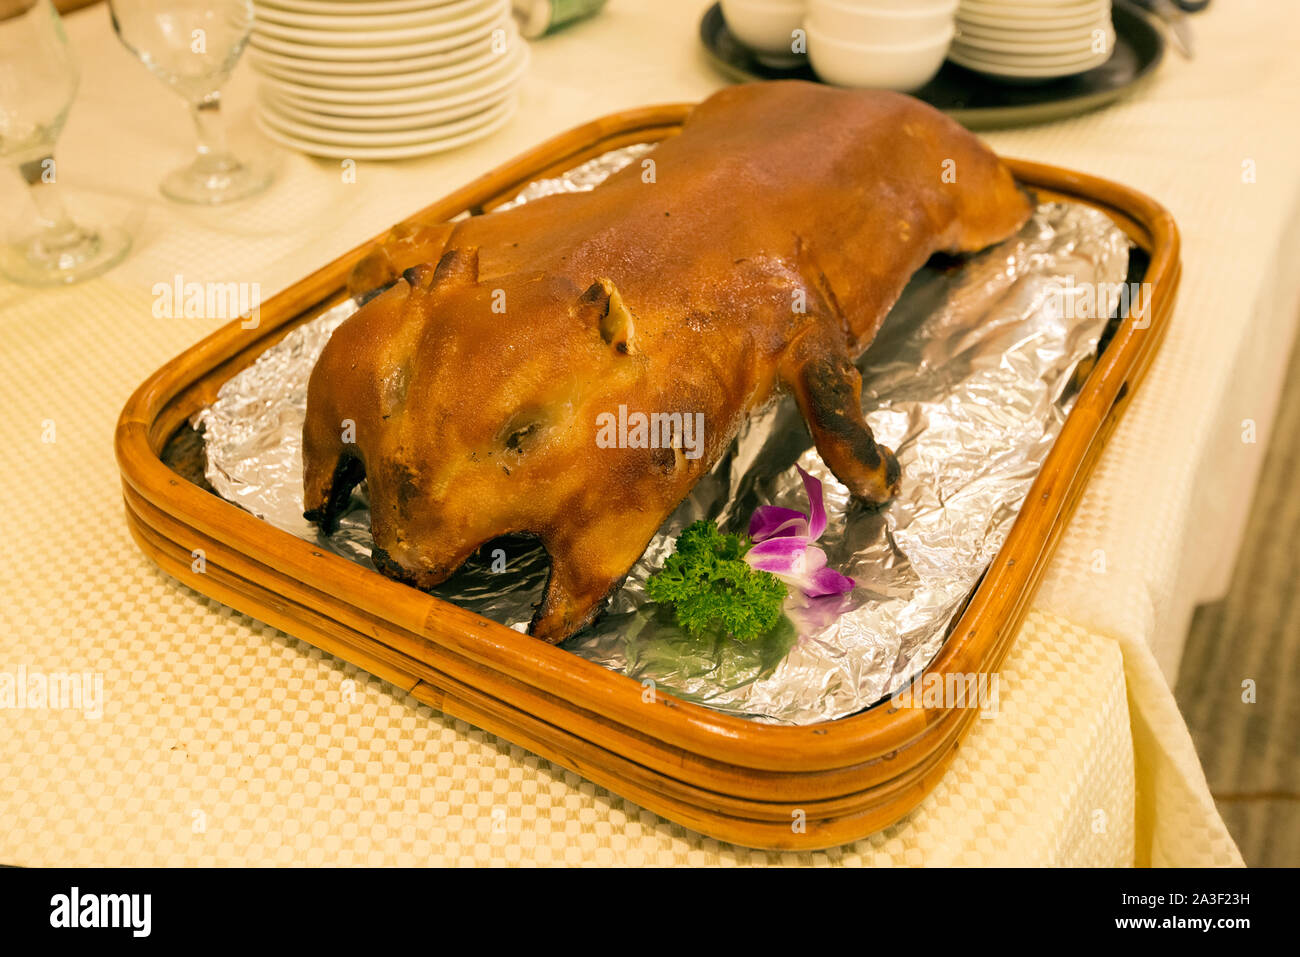 Chinese restaurant, roasted baby pig, Hong Kong, China. Stock Photo